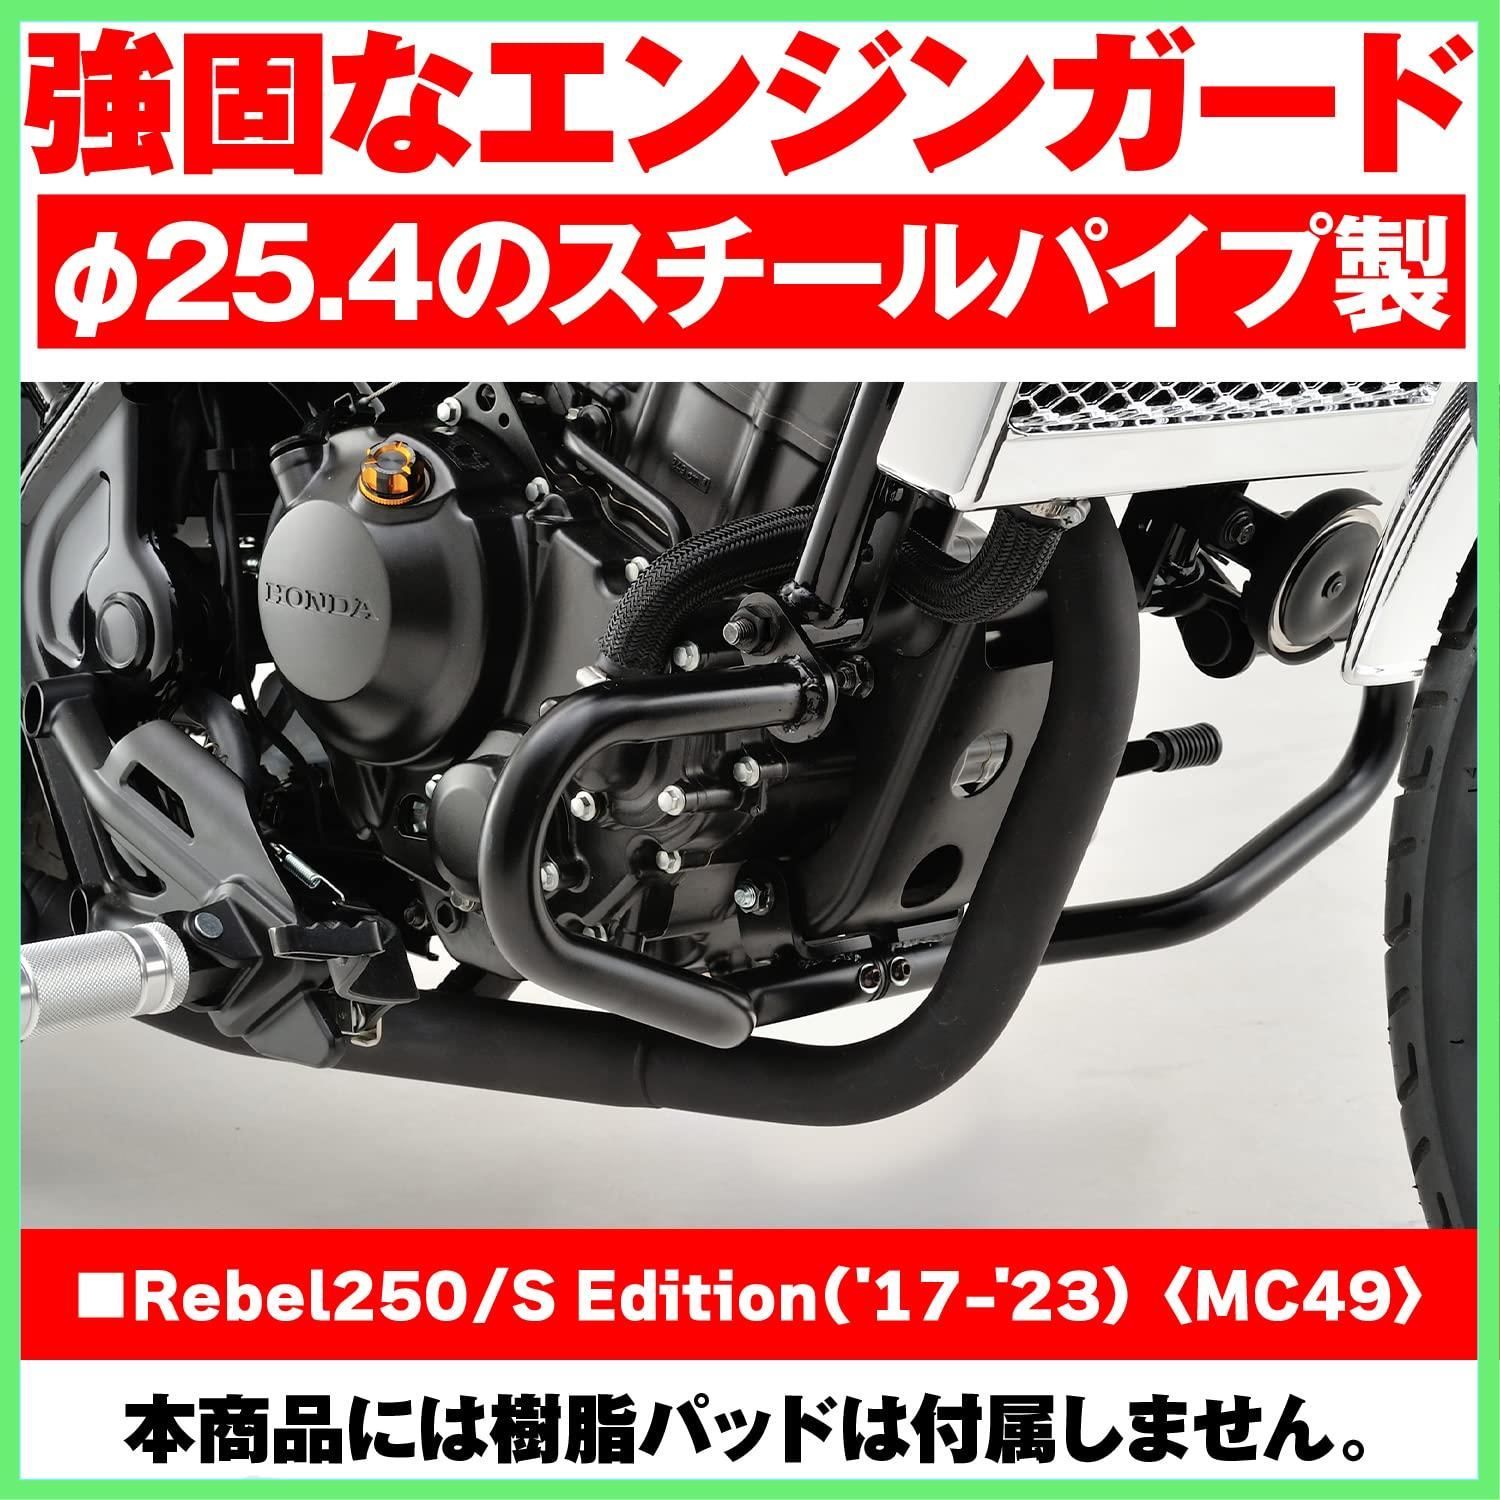 デイトナ(Daytona) バイク用 エンジンガード レブル250(17-23)専用 φ25